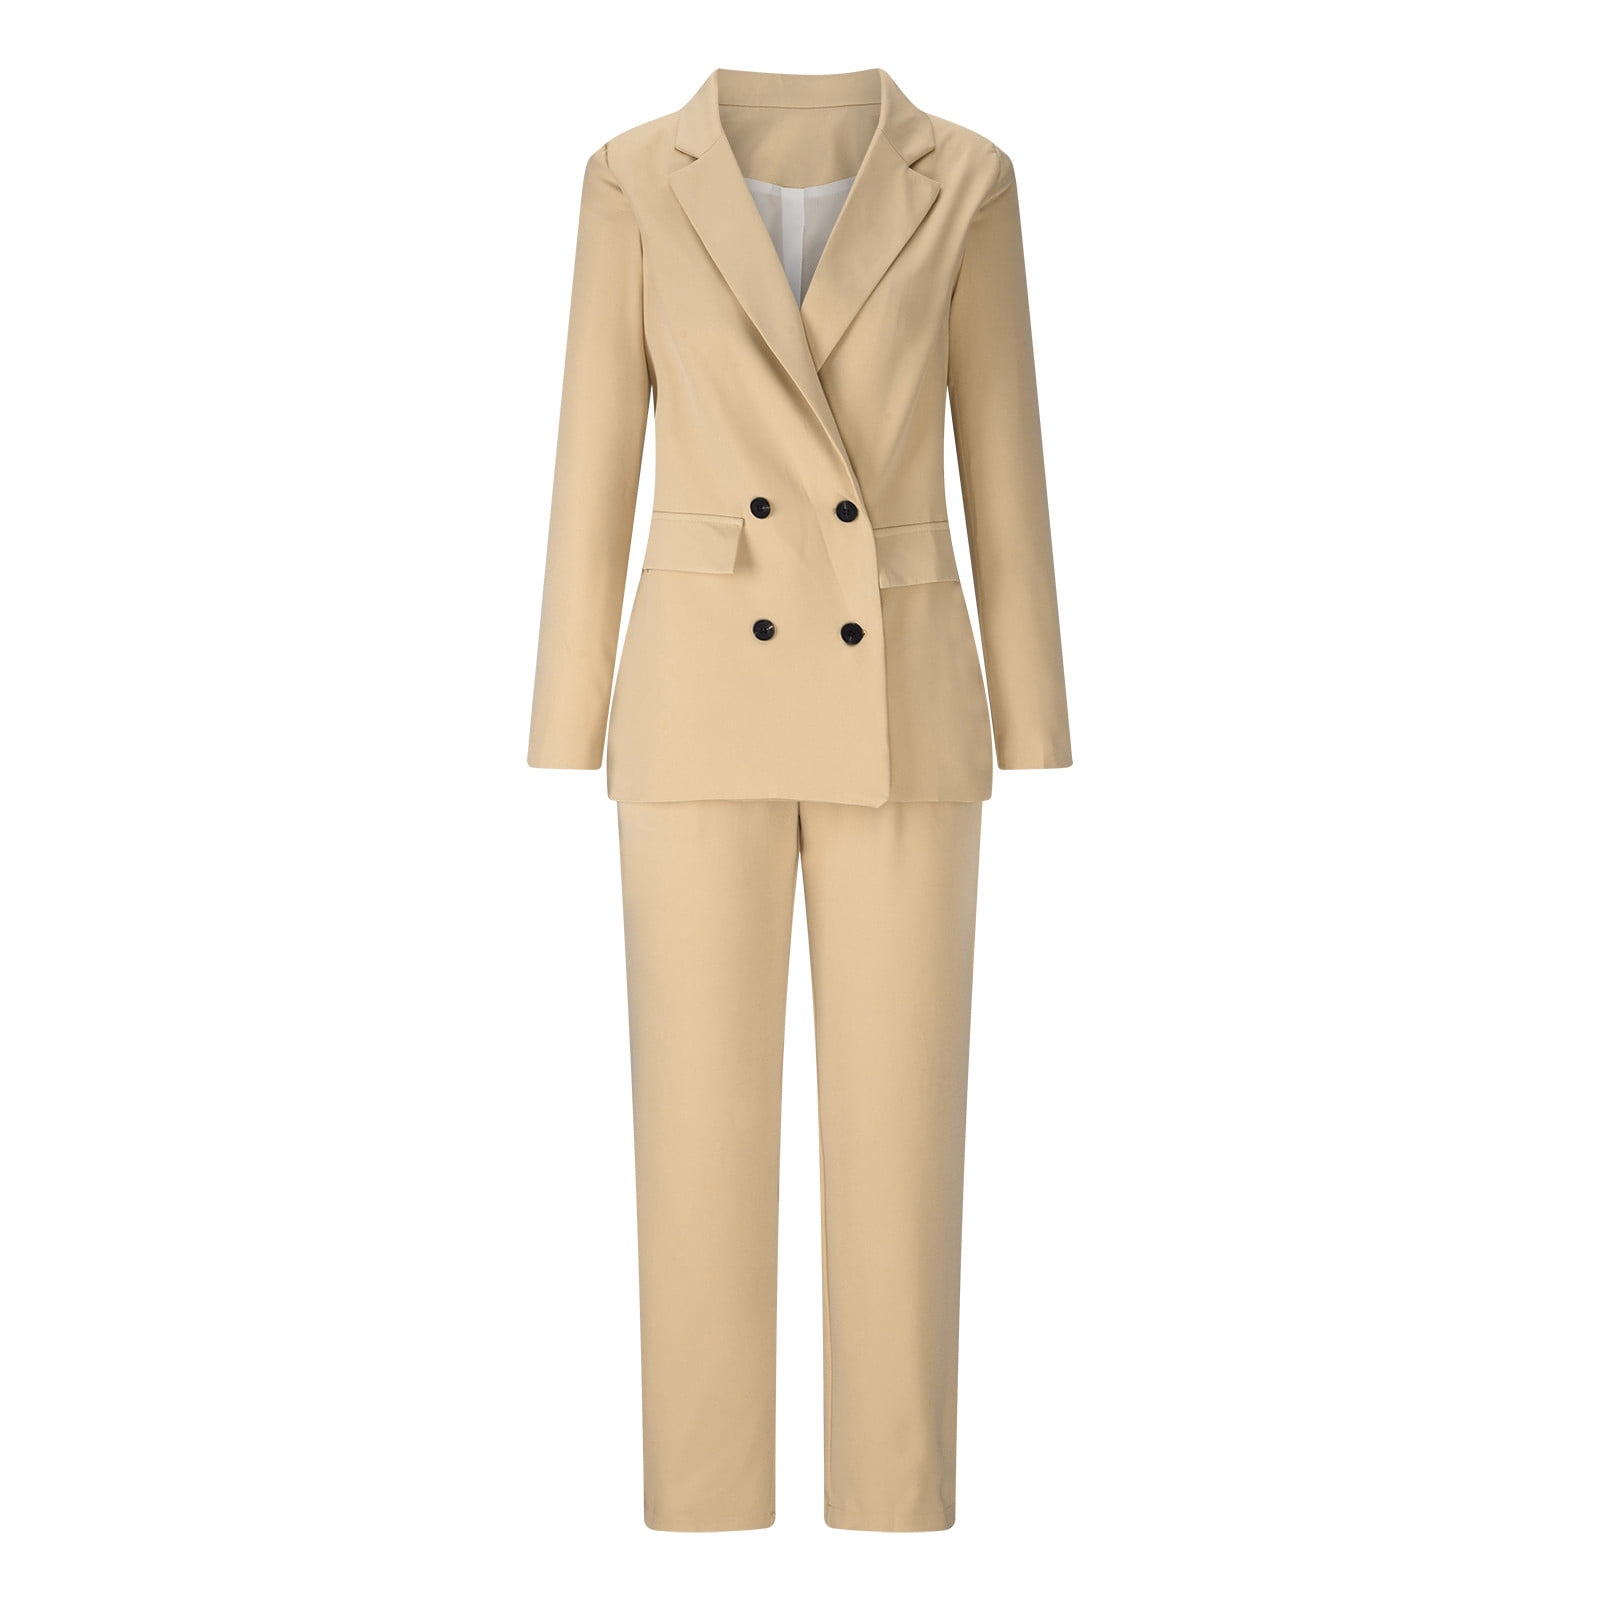 Women's 3 Piece Office Work Suit Blazer Vest Pants Business Outfits Pants  Suit Set Prom Party Suit, Beige, X-Small : : Clothing, Shoes &  Accessories